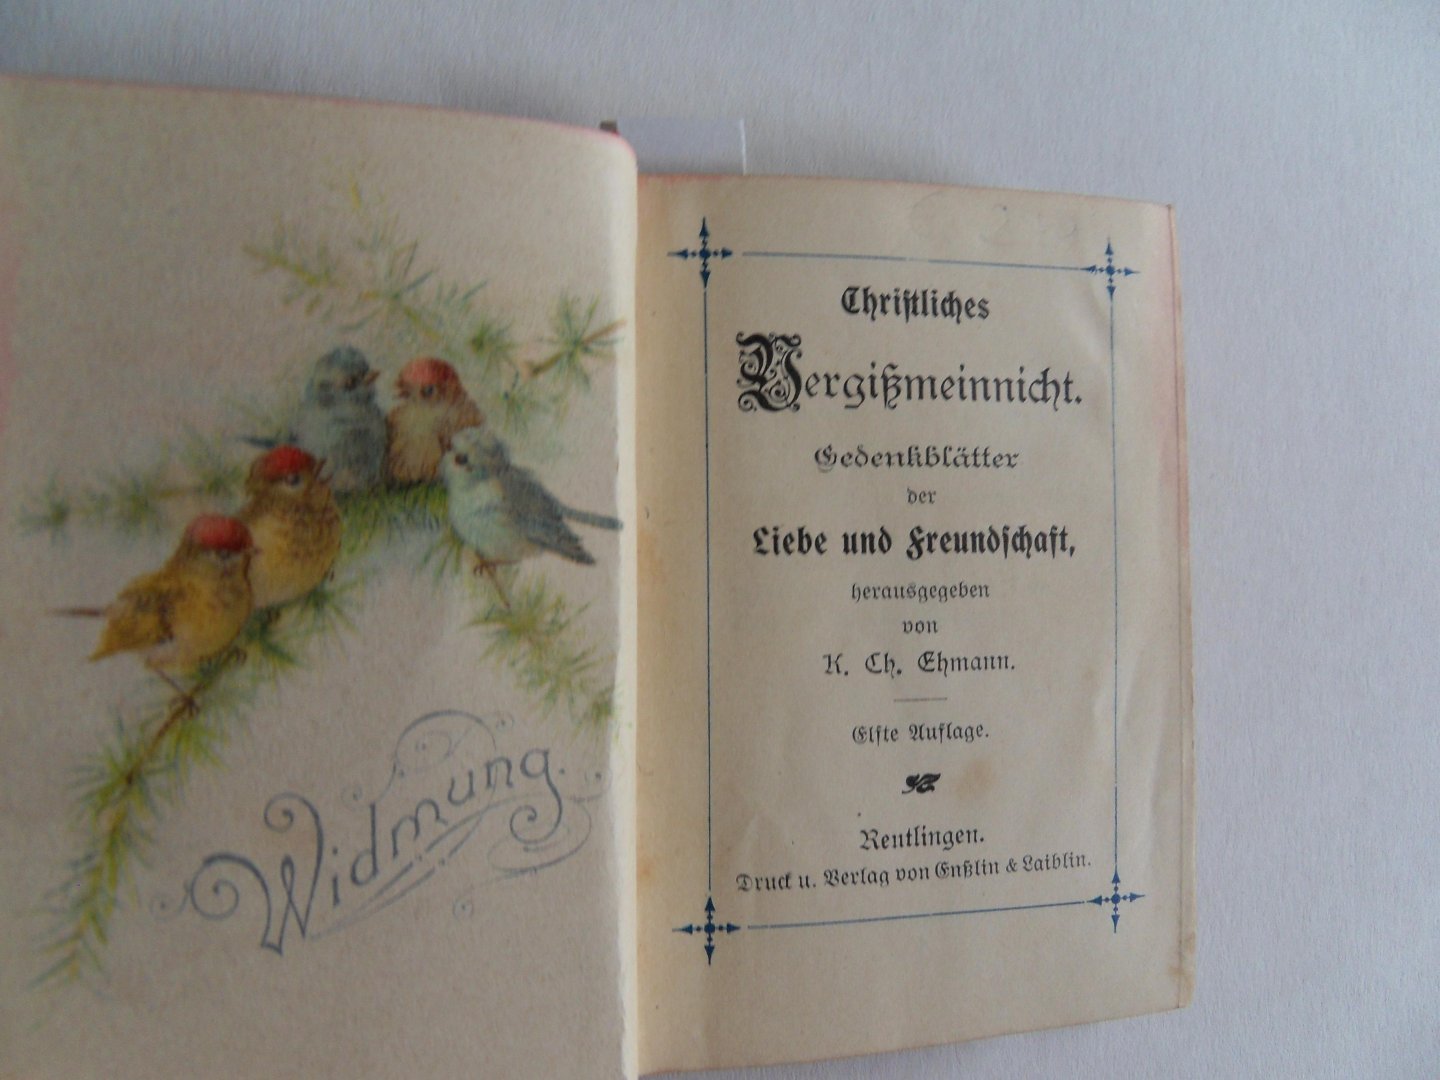 Ehmann, K. Ch. [ herausgegeben von ]. - Christliches Vergiszmeinnicht. - Gedenkblätter der Liebe und Freundschaft.